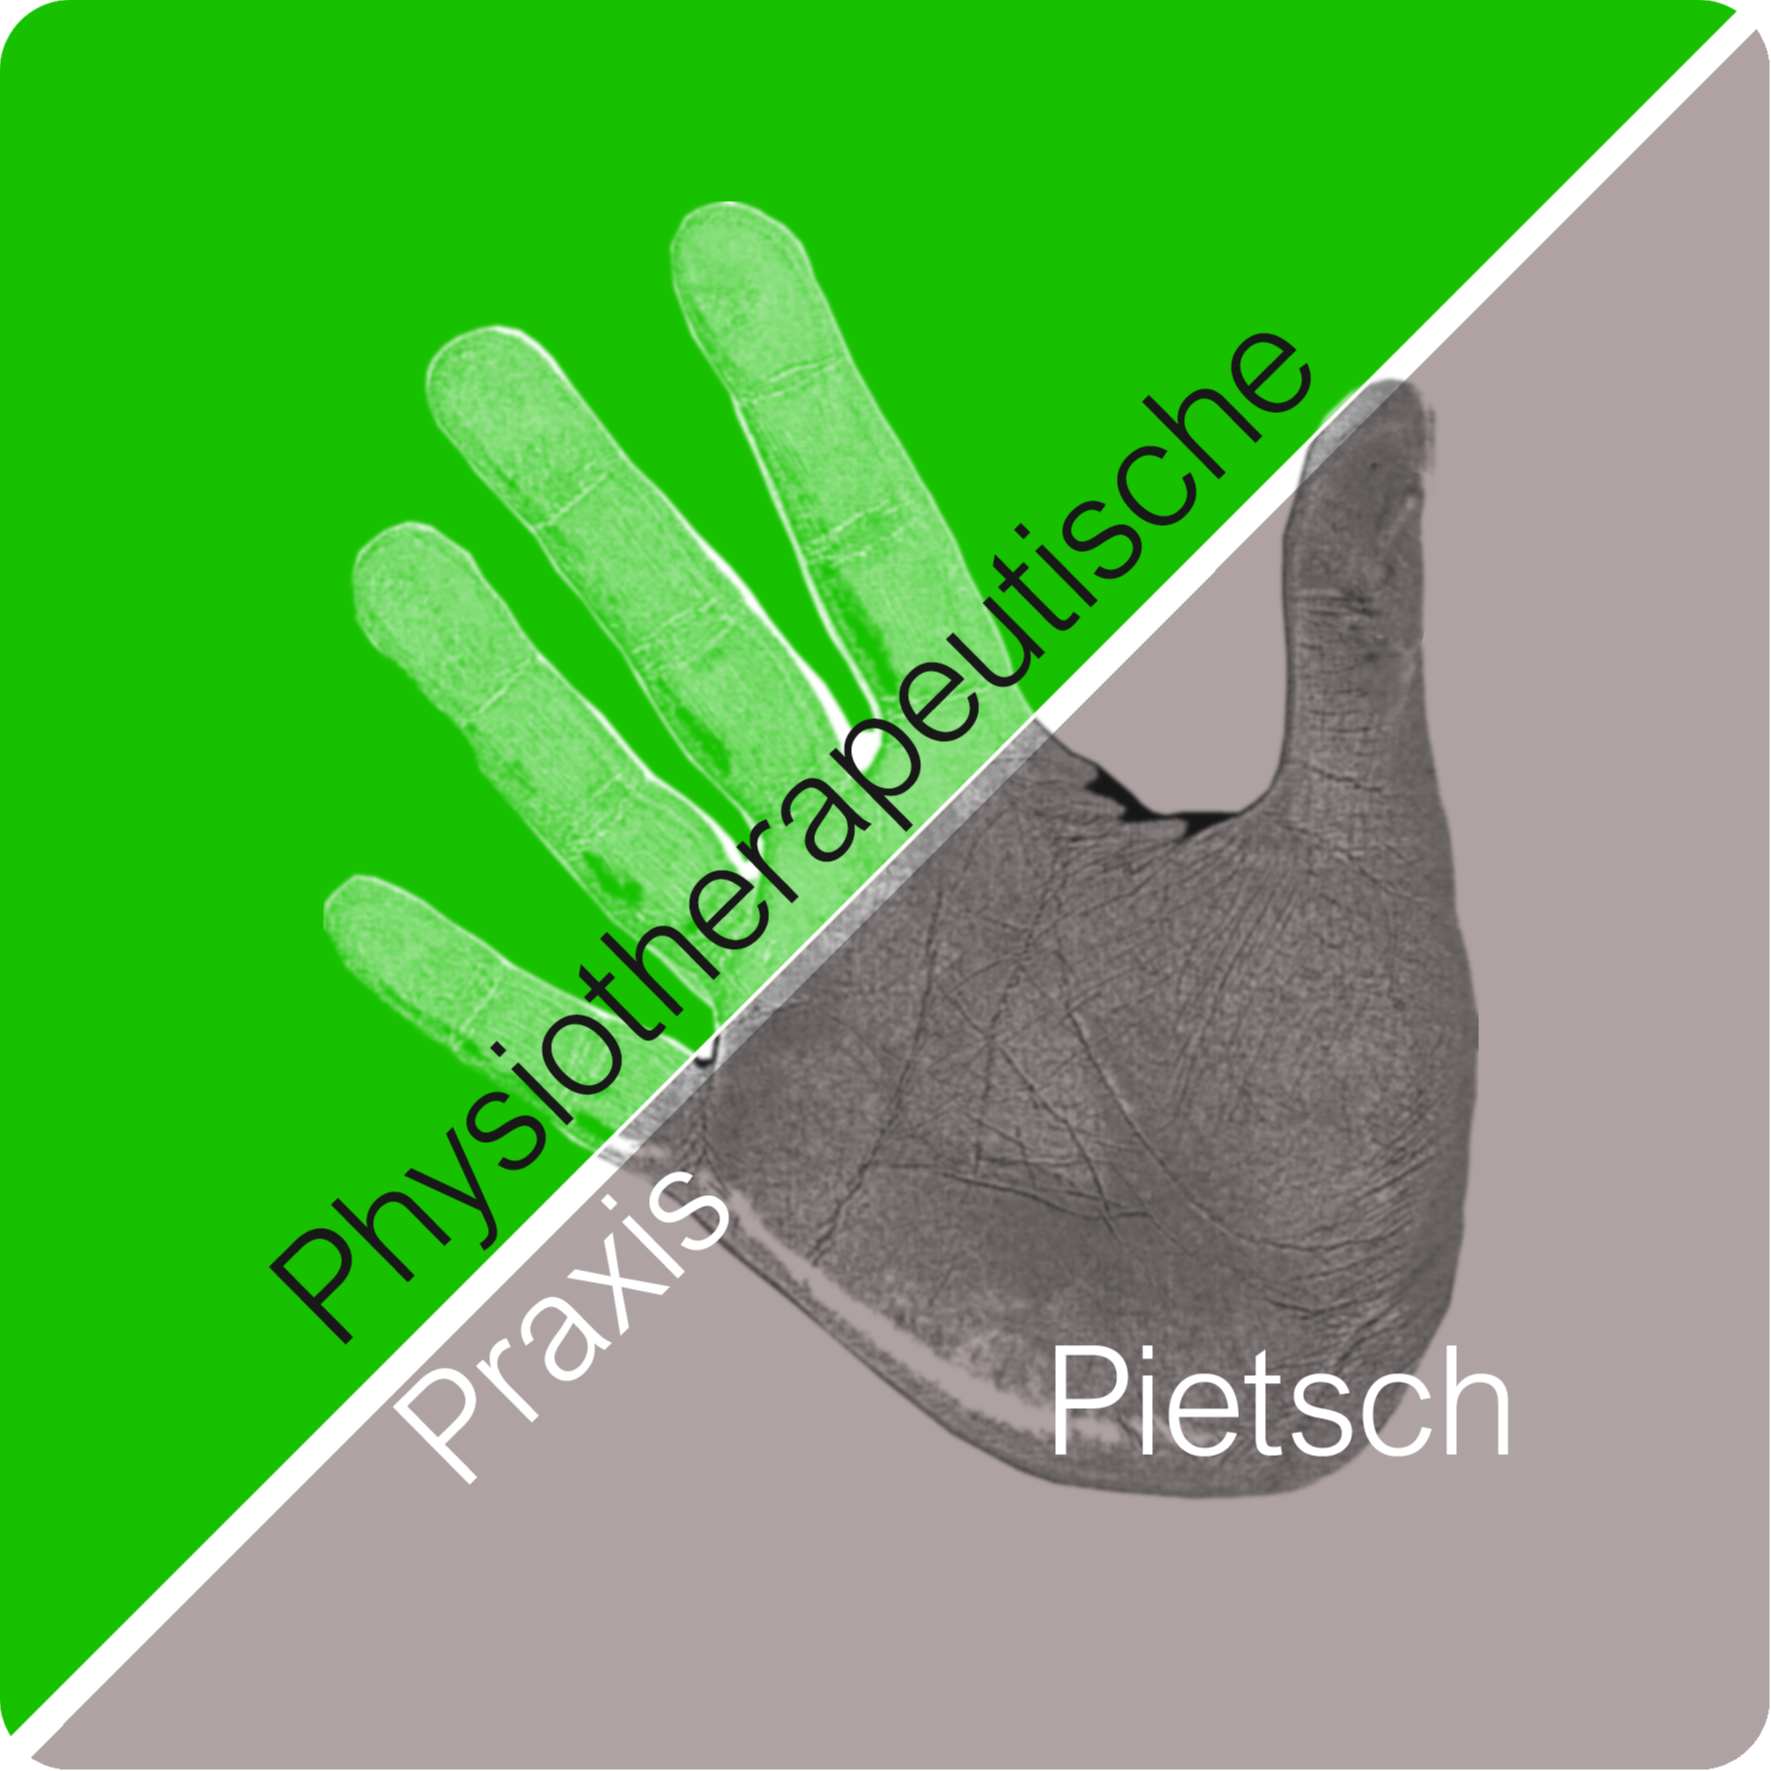 Physiotherapeutische Praxis Pietsch Logo